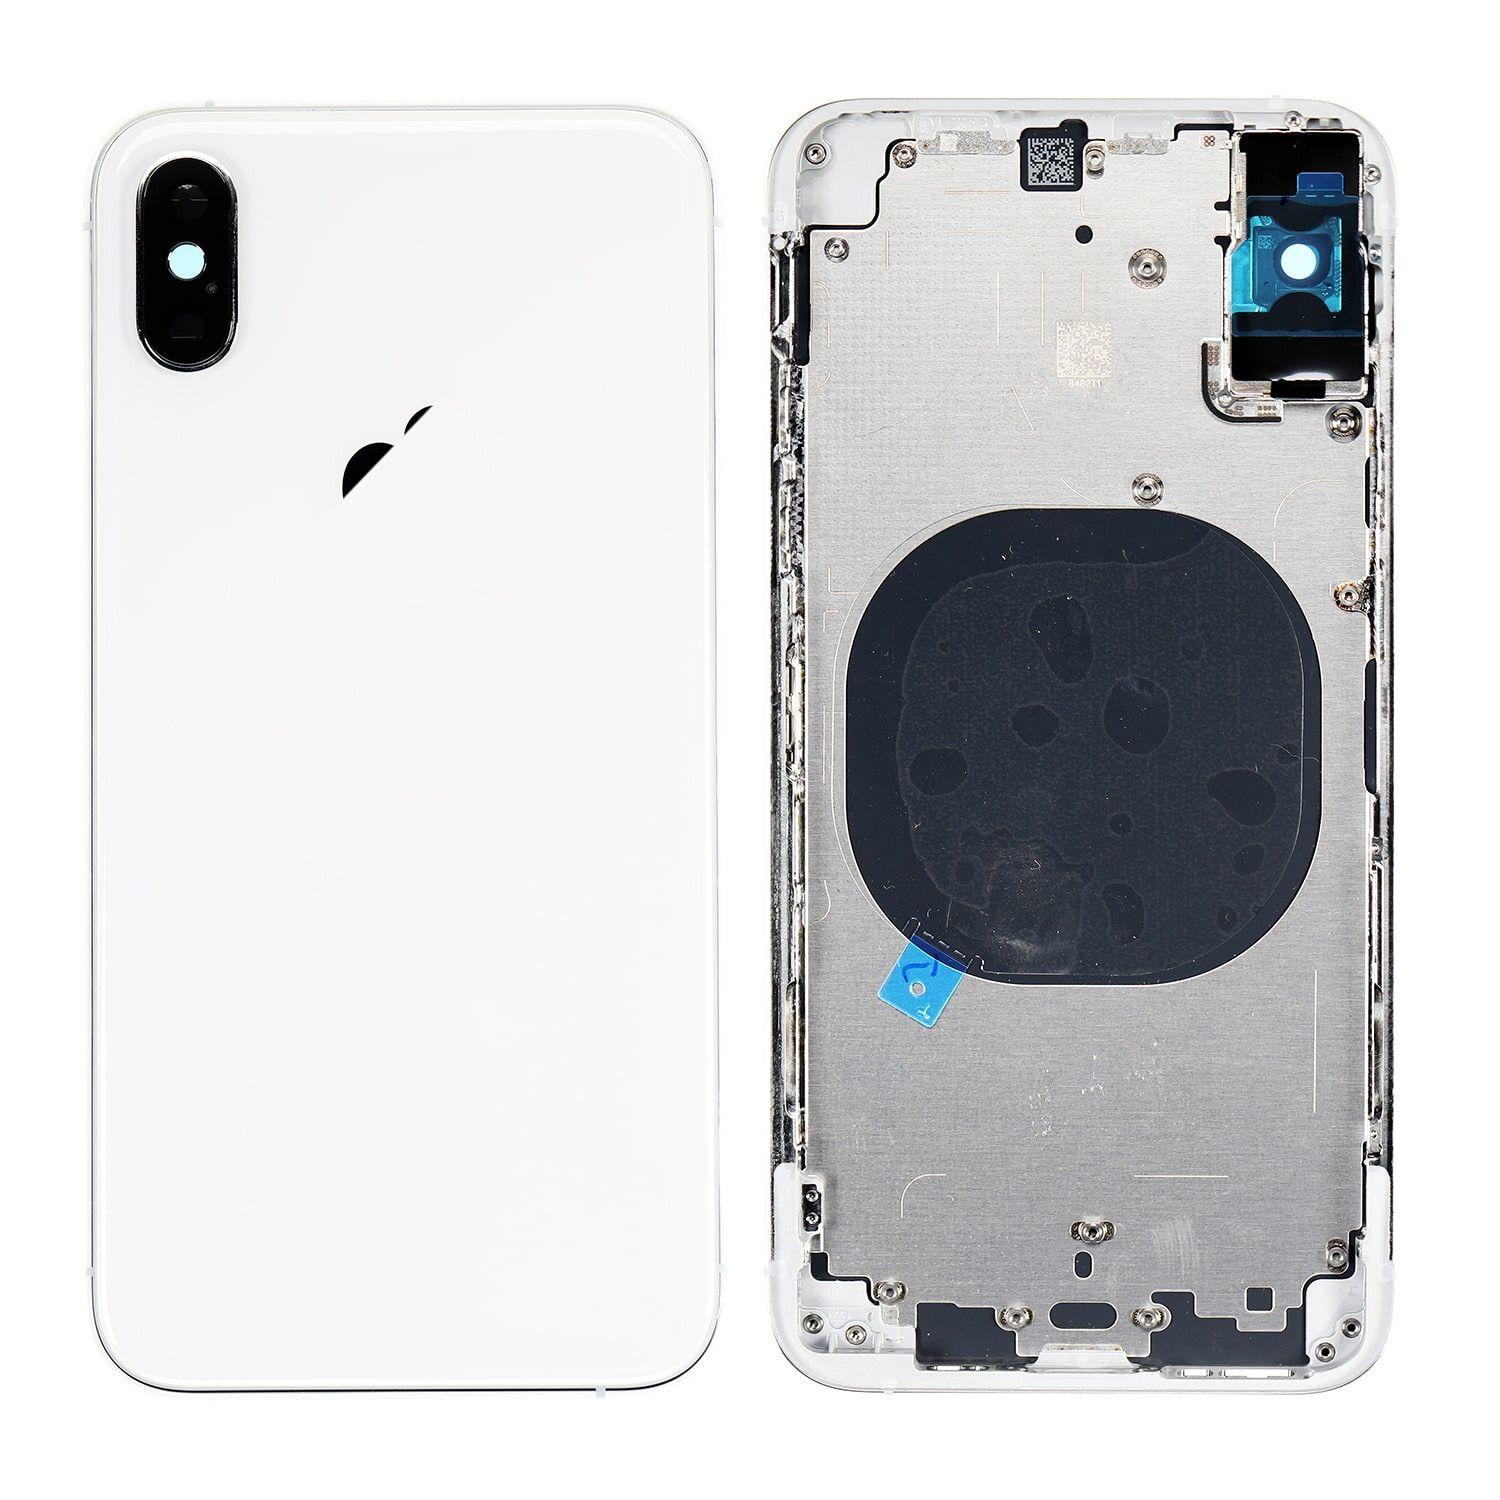 Korpus iPhone Xs + zadní kryt bílý